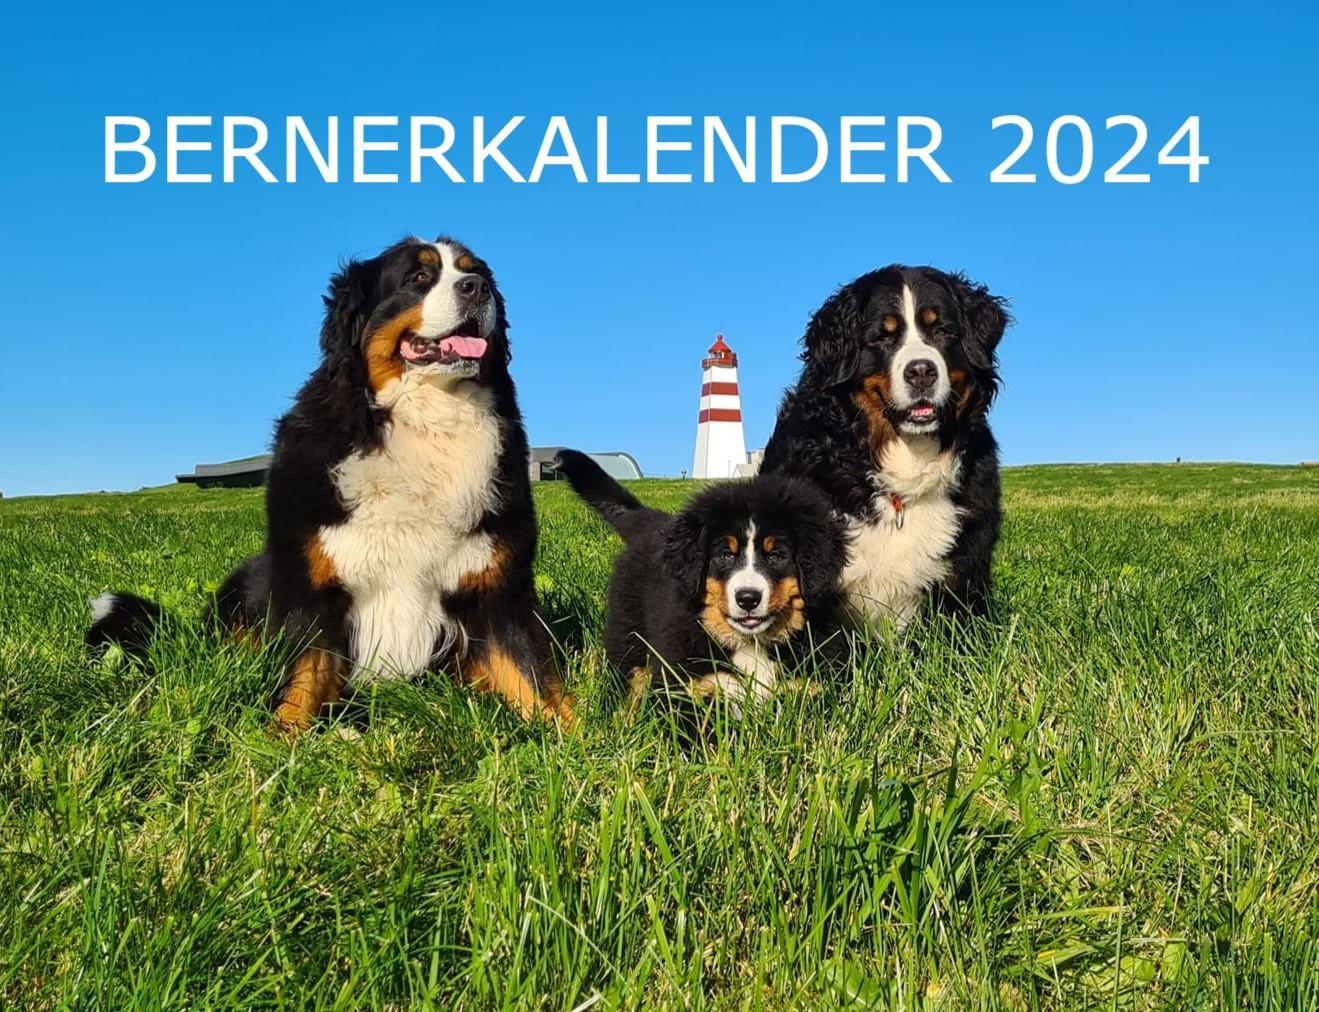 Bernerkalender 2024 - medlemspris